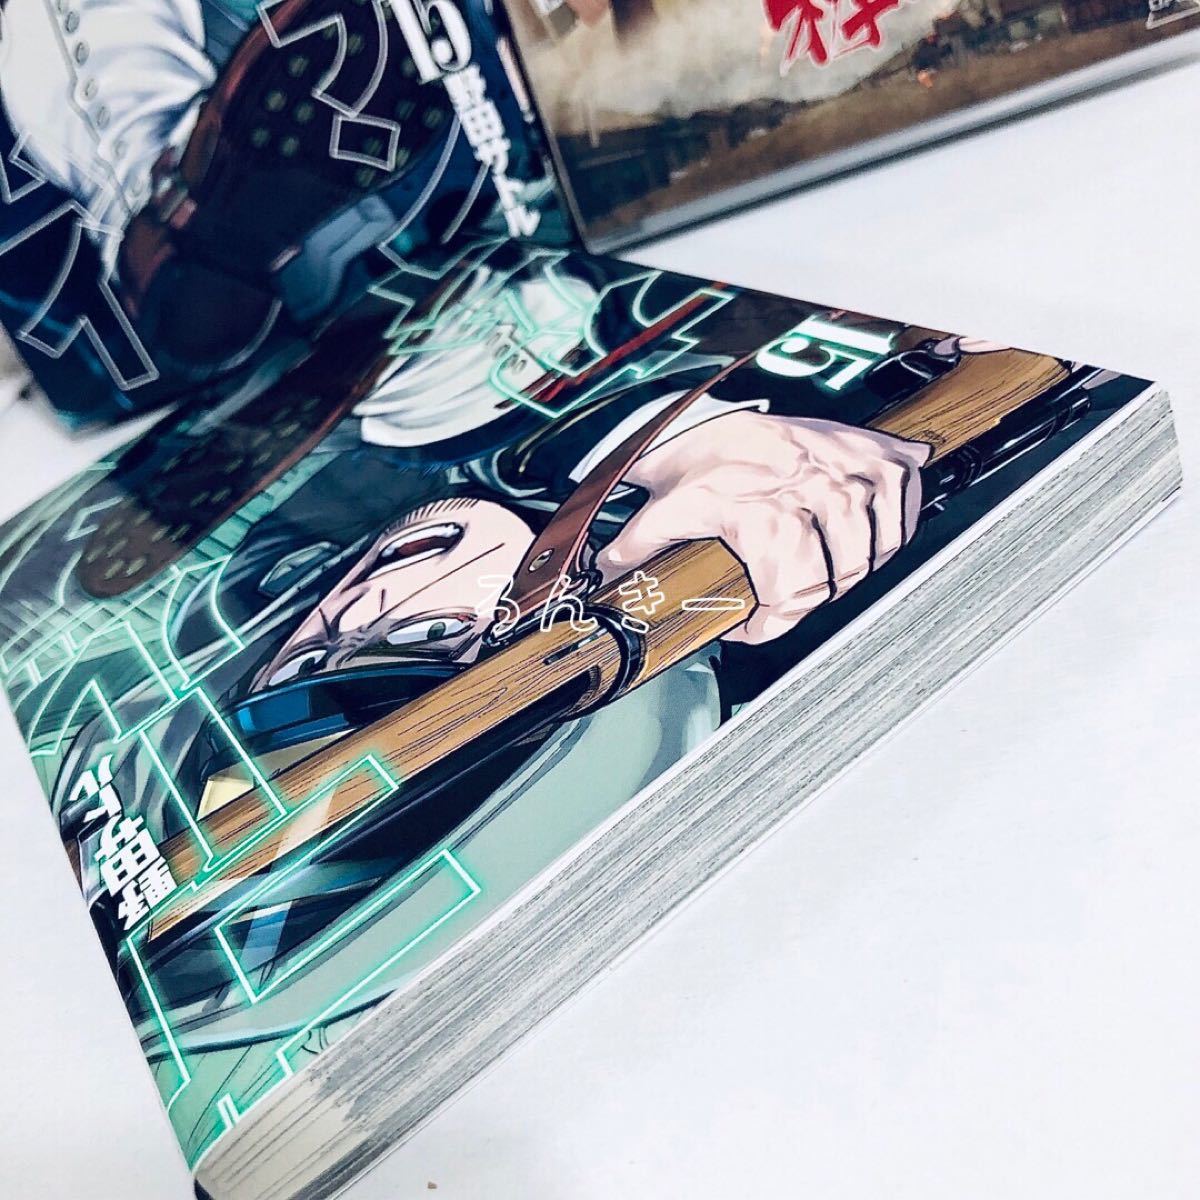 【匿名&送料無料】ゴールデンカムイ 15巻 アニメDVD同梱版 限定版